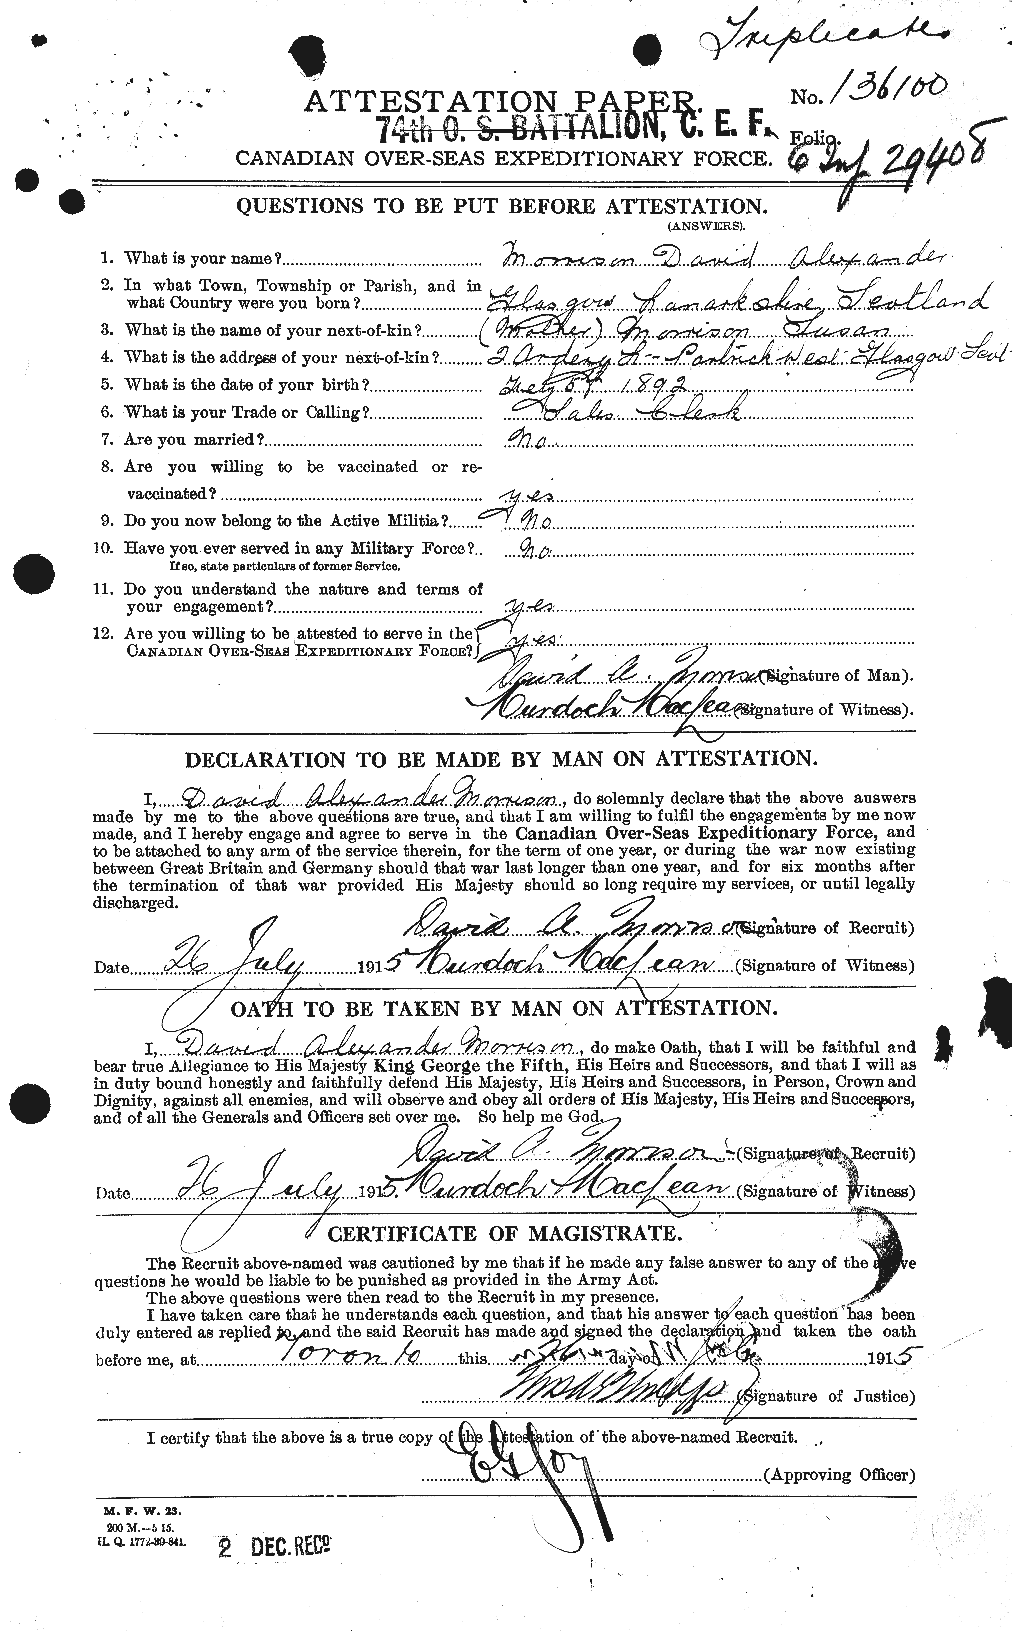 Dossiers du Personnel de la Première Guerre mondiale - CEC 505425a